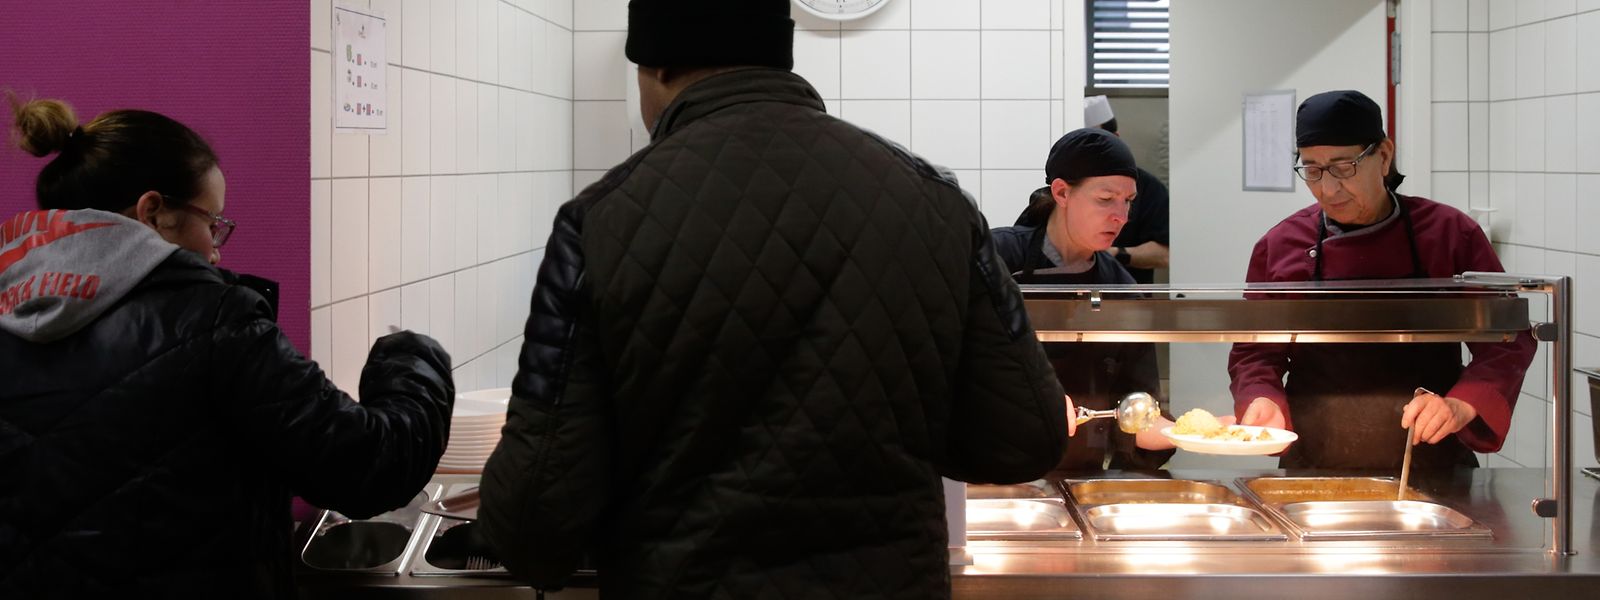 Täglich servieren die Mitarbeiter des Sozialrestaurants in Hollerich mehr als 200 Mahlzeiten an Bedürftige. Die aktuelle Kapazität der Küche reicht dafür nicht mehr aus. 